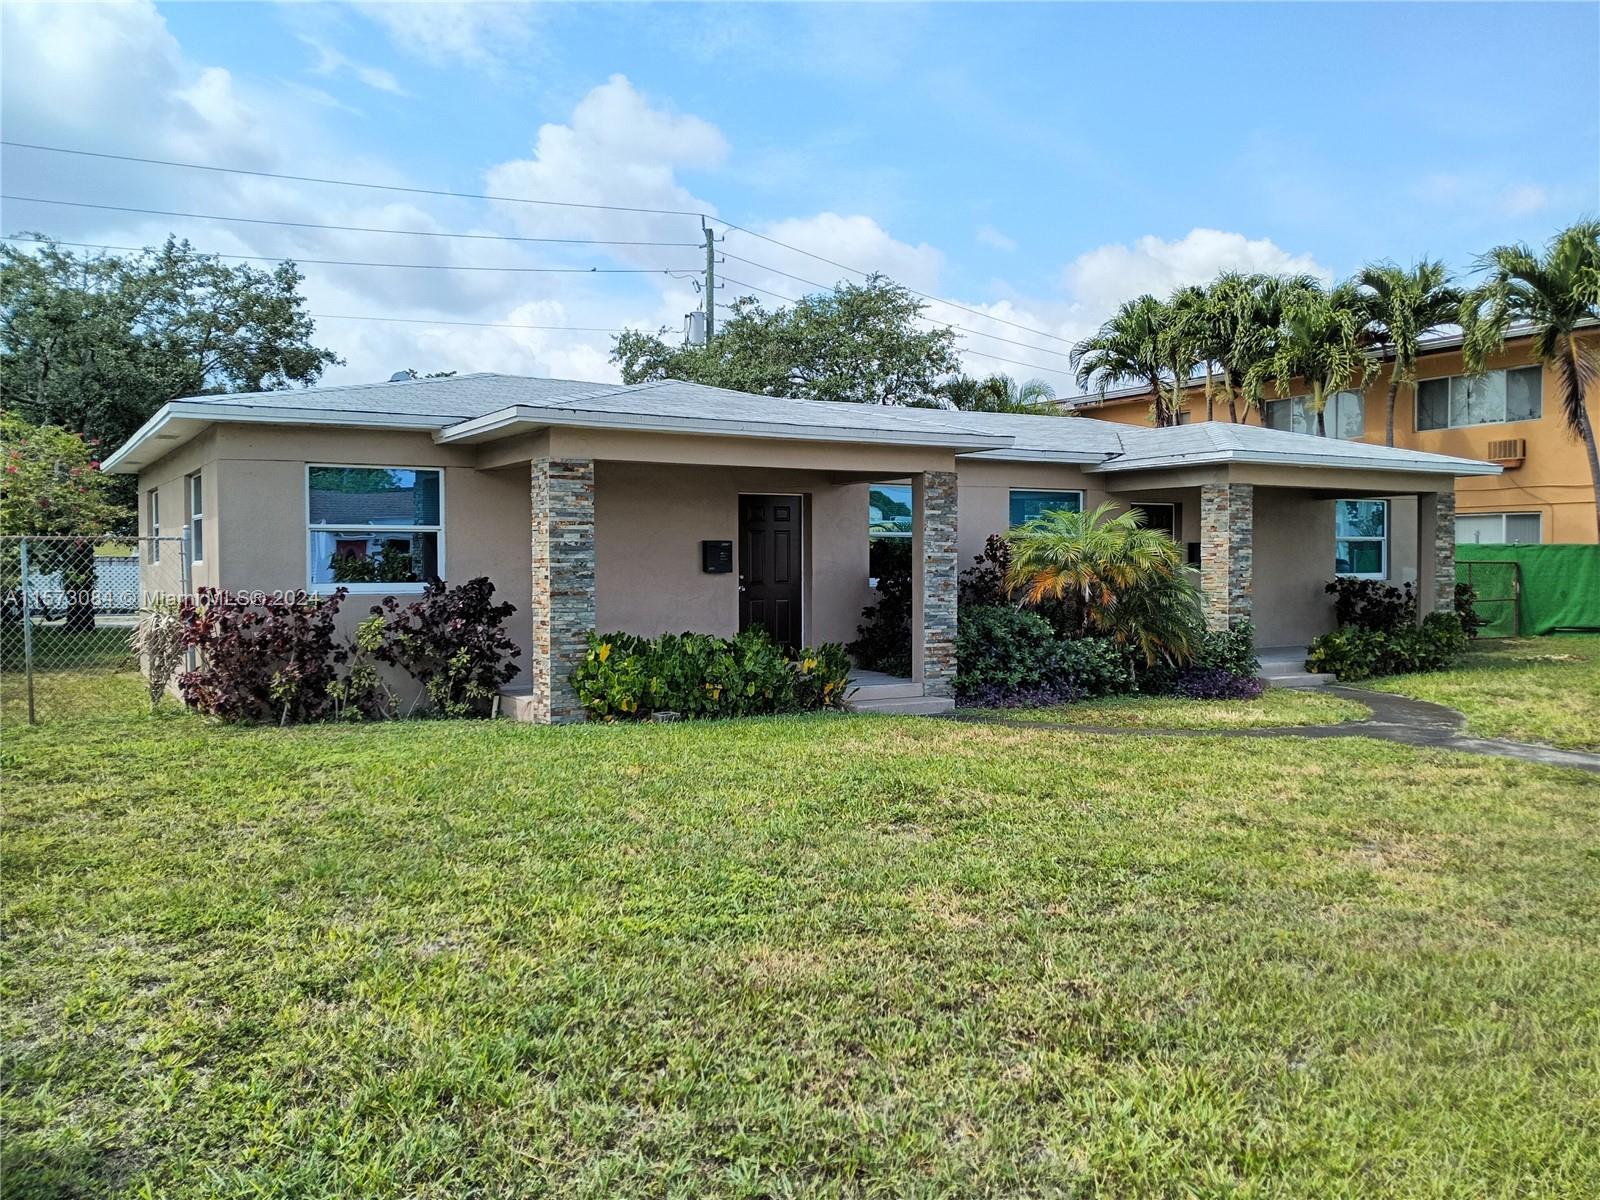 Rental Property at 1942 N Johnson St St, Hollywood, Broward County, Florida -  - $680,000 MO.